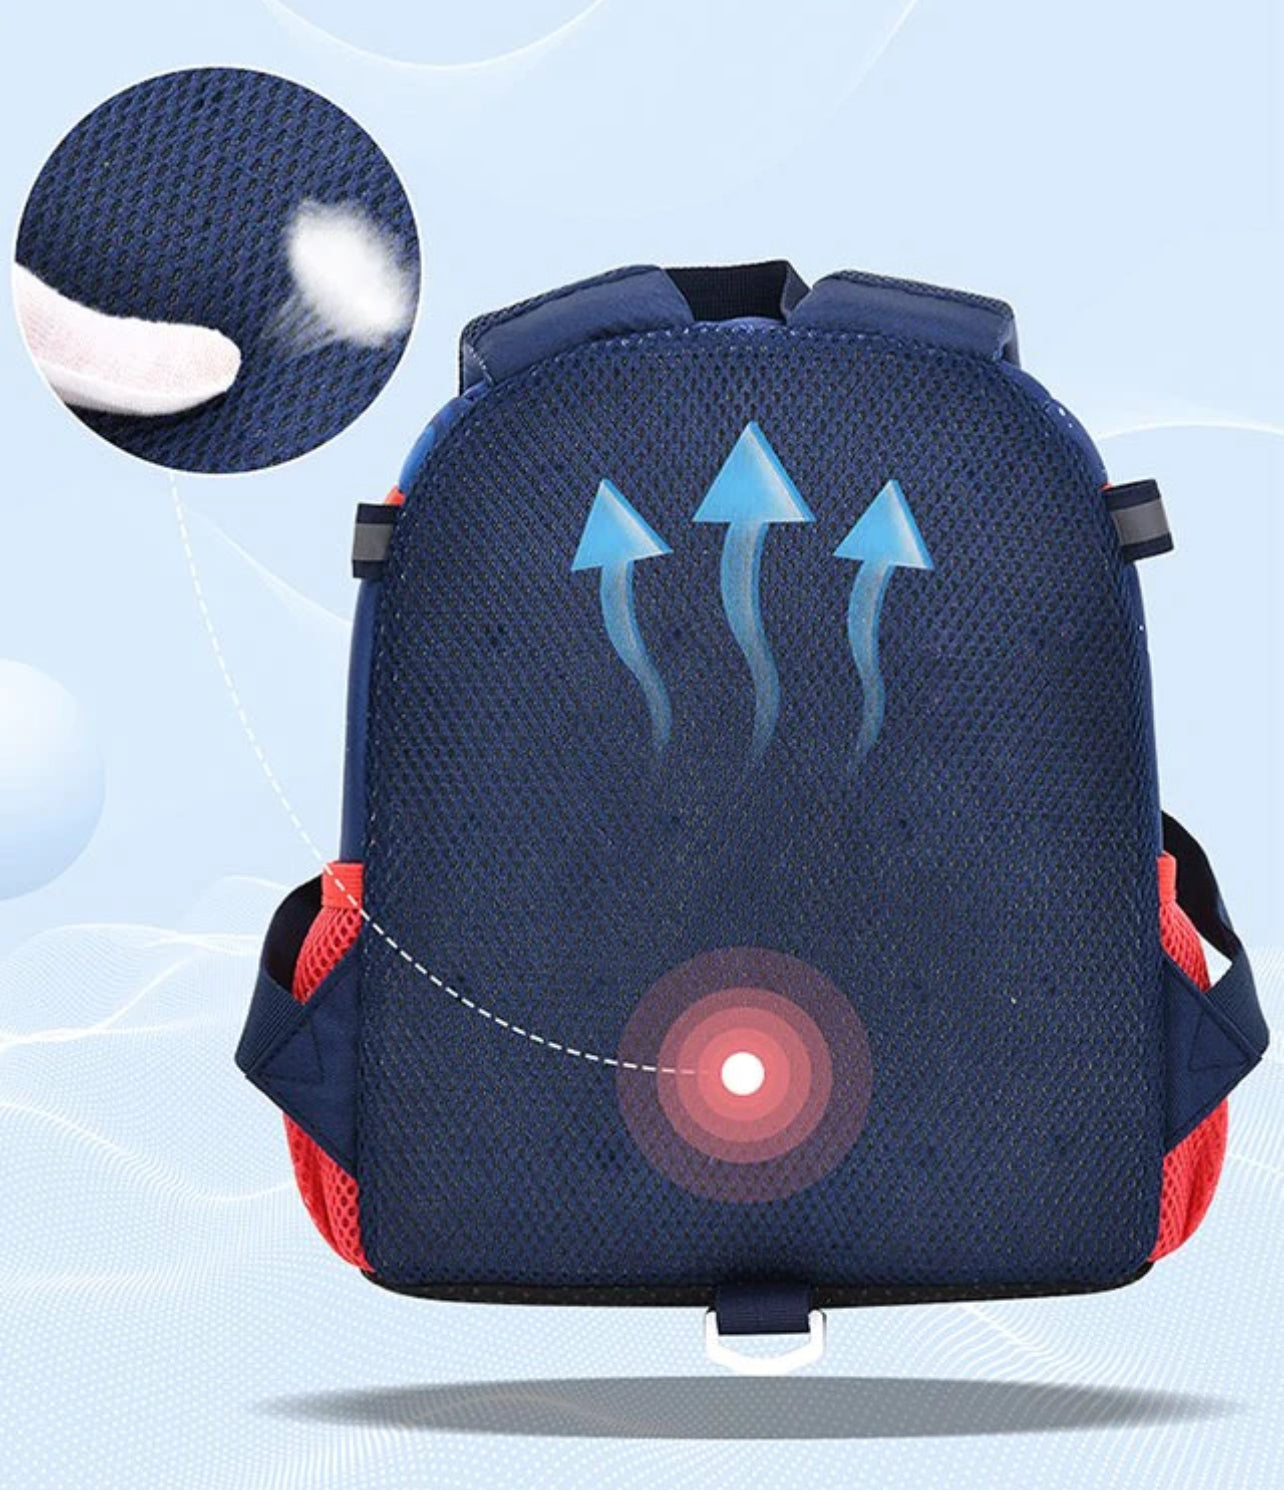 3D Rocket Design Large Capacity Backpack with Slip Over Buckle for Kindergarten Kids